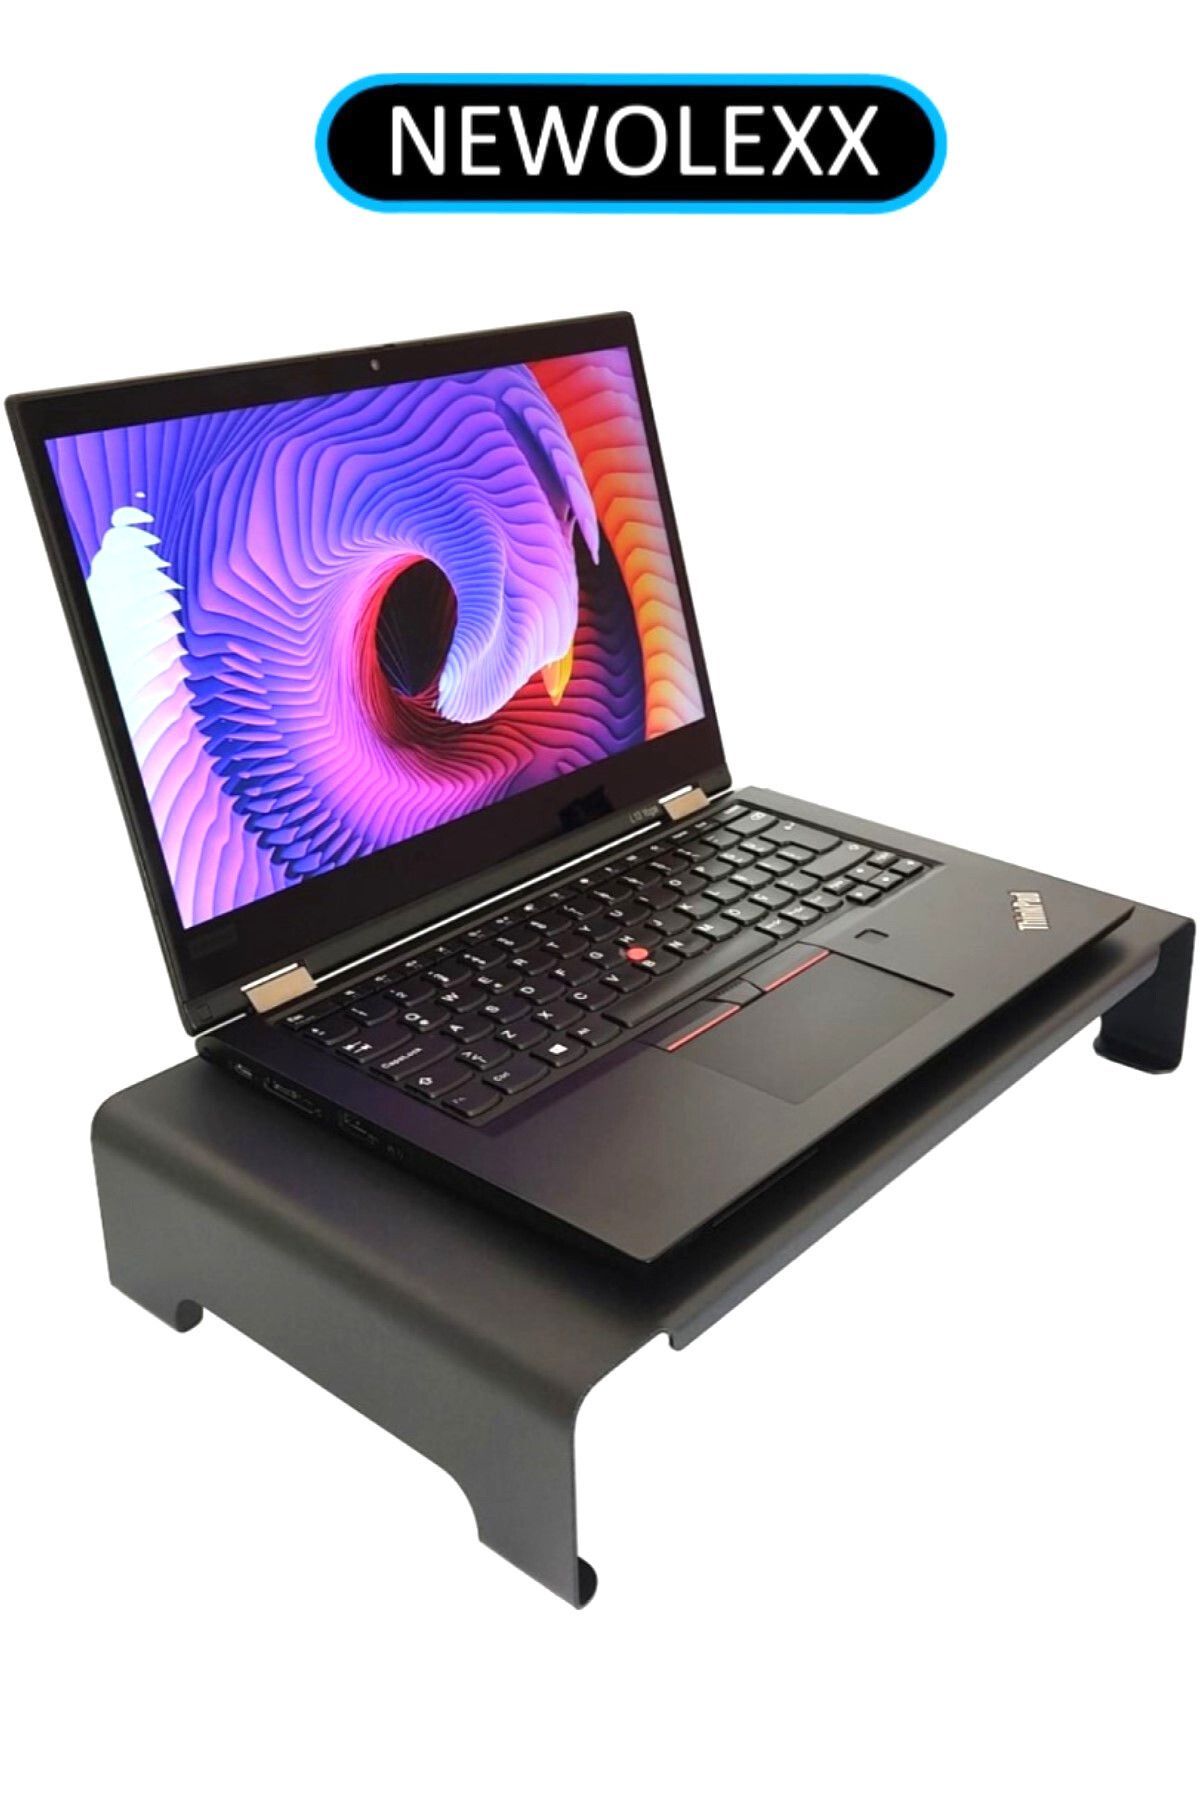 NEWOLEXX Çok Amaçlı Monitör Laptop Notebook Yazıcı Standı Yükseltici Altlık Siyah